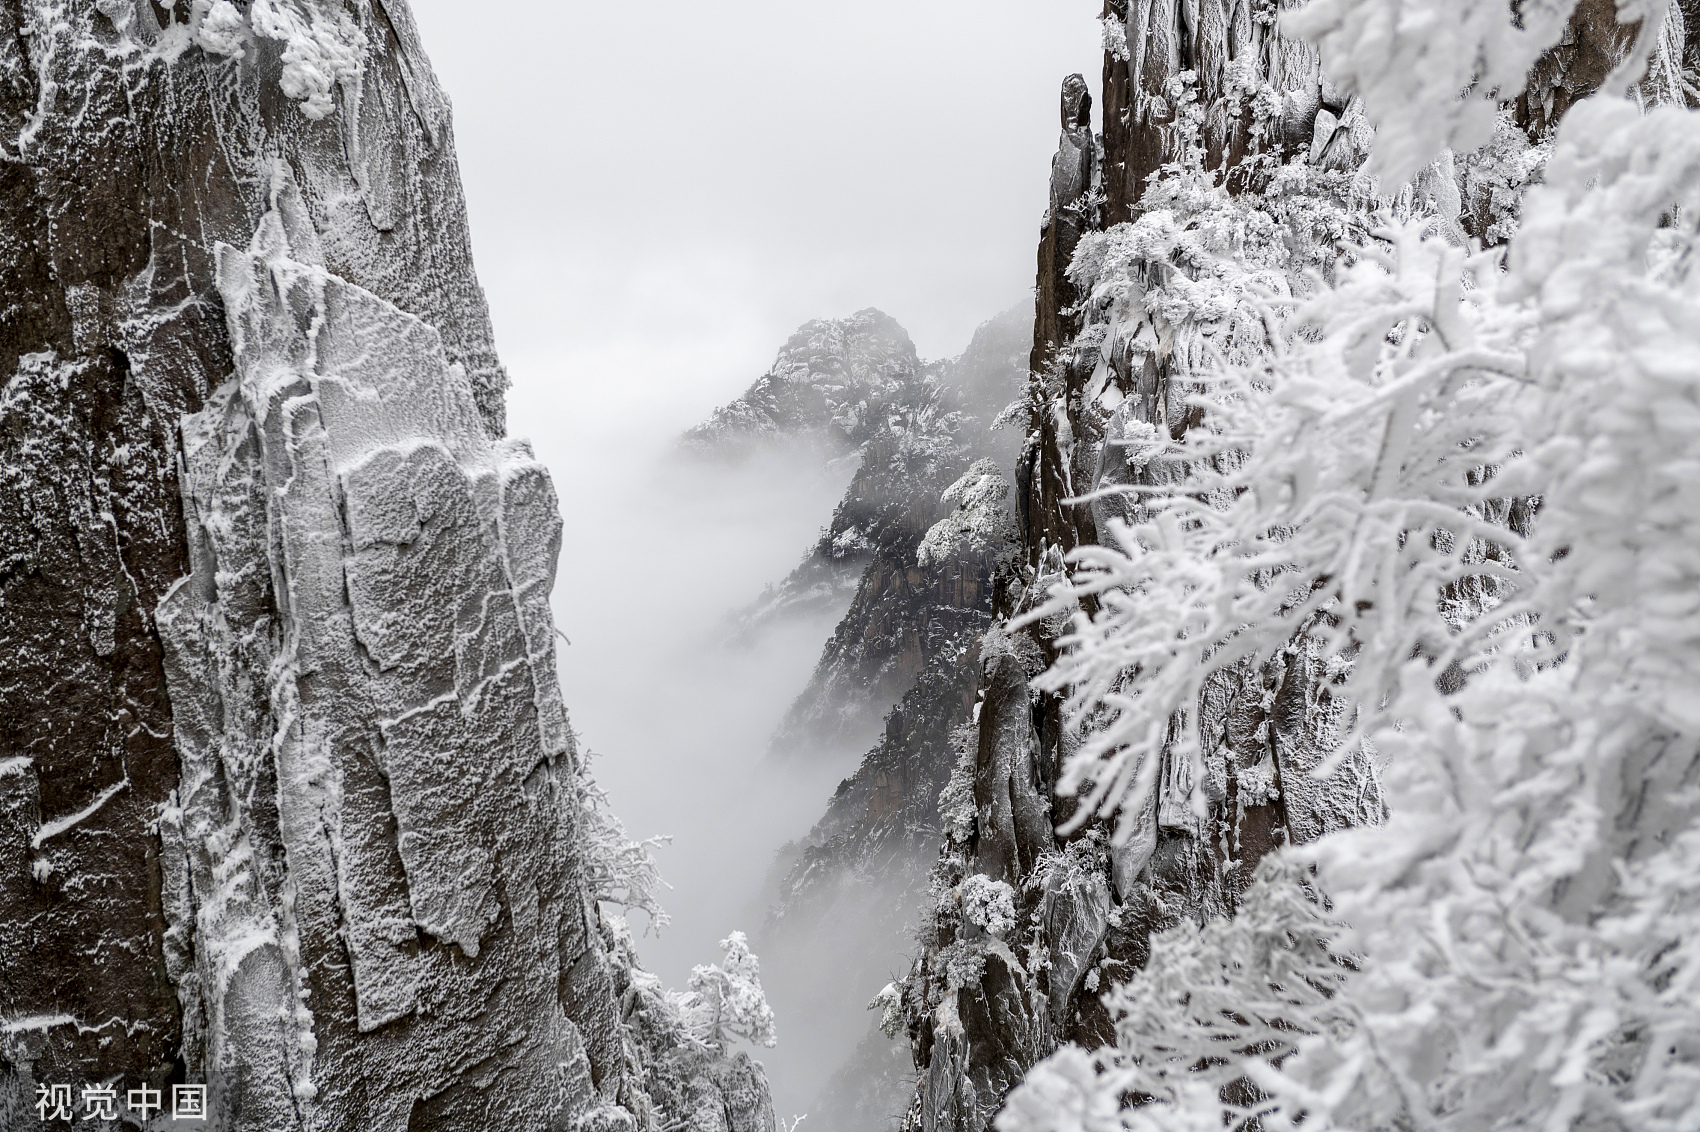 安徽黄山现大面积雪凇美景 到处银装素裹晶莹剔透